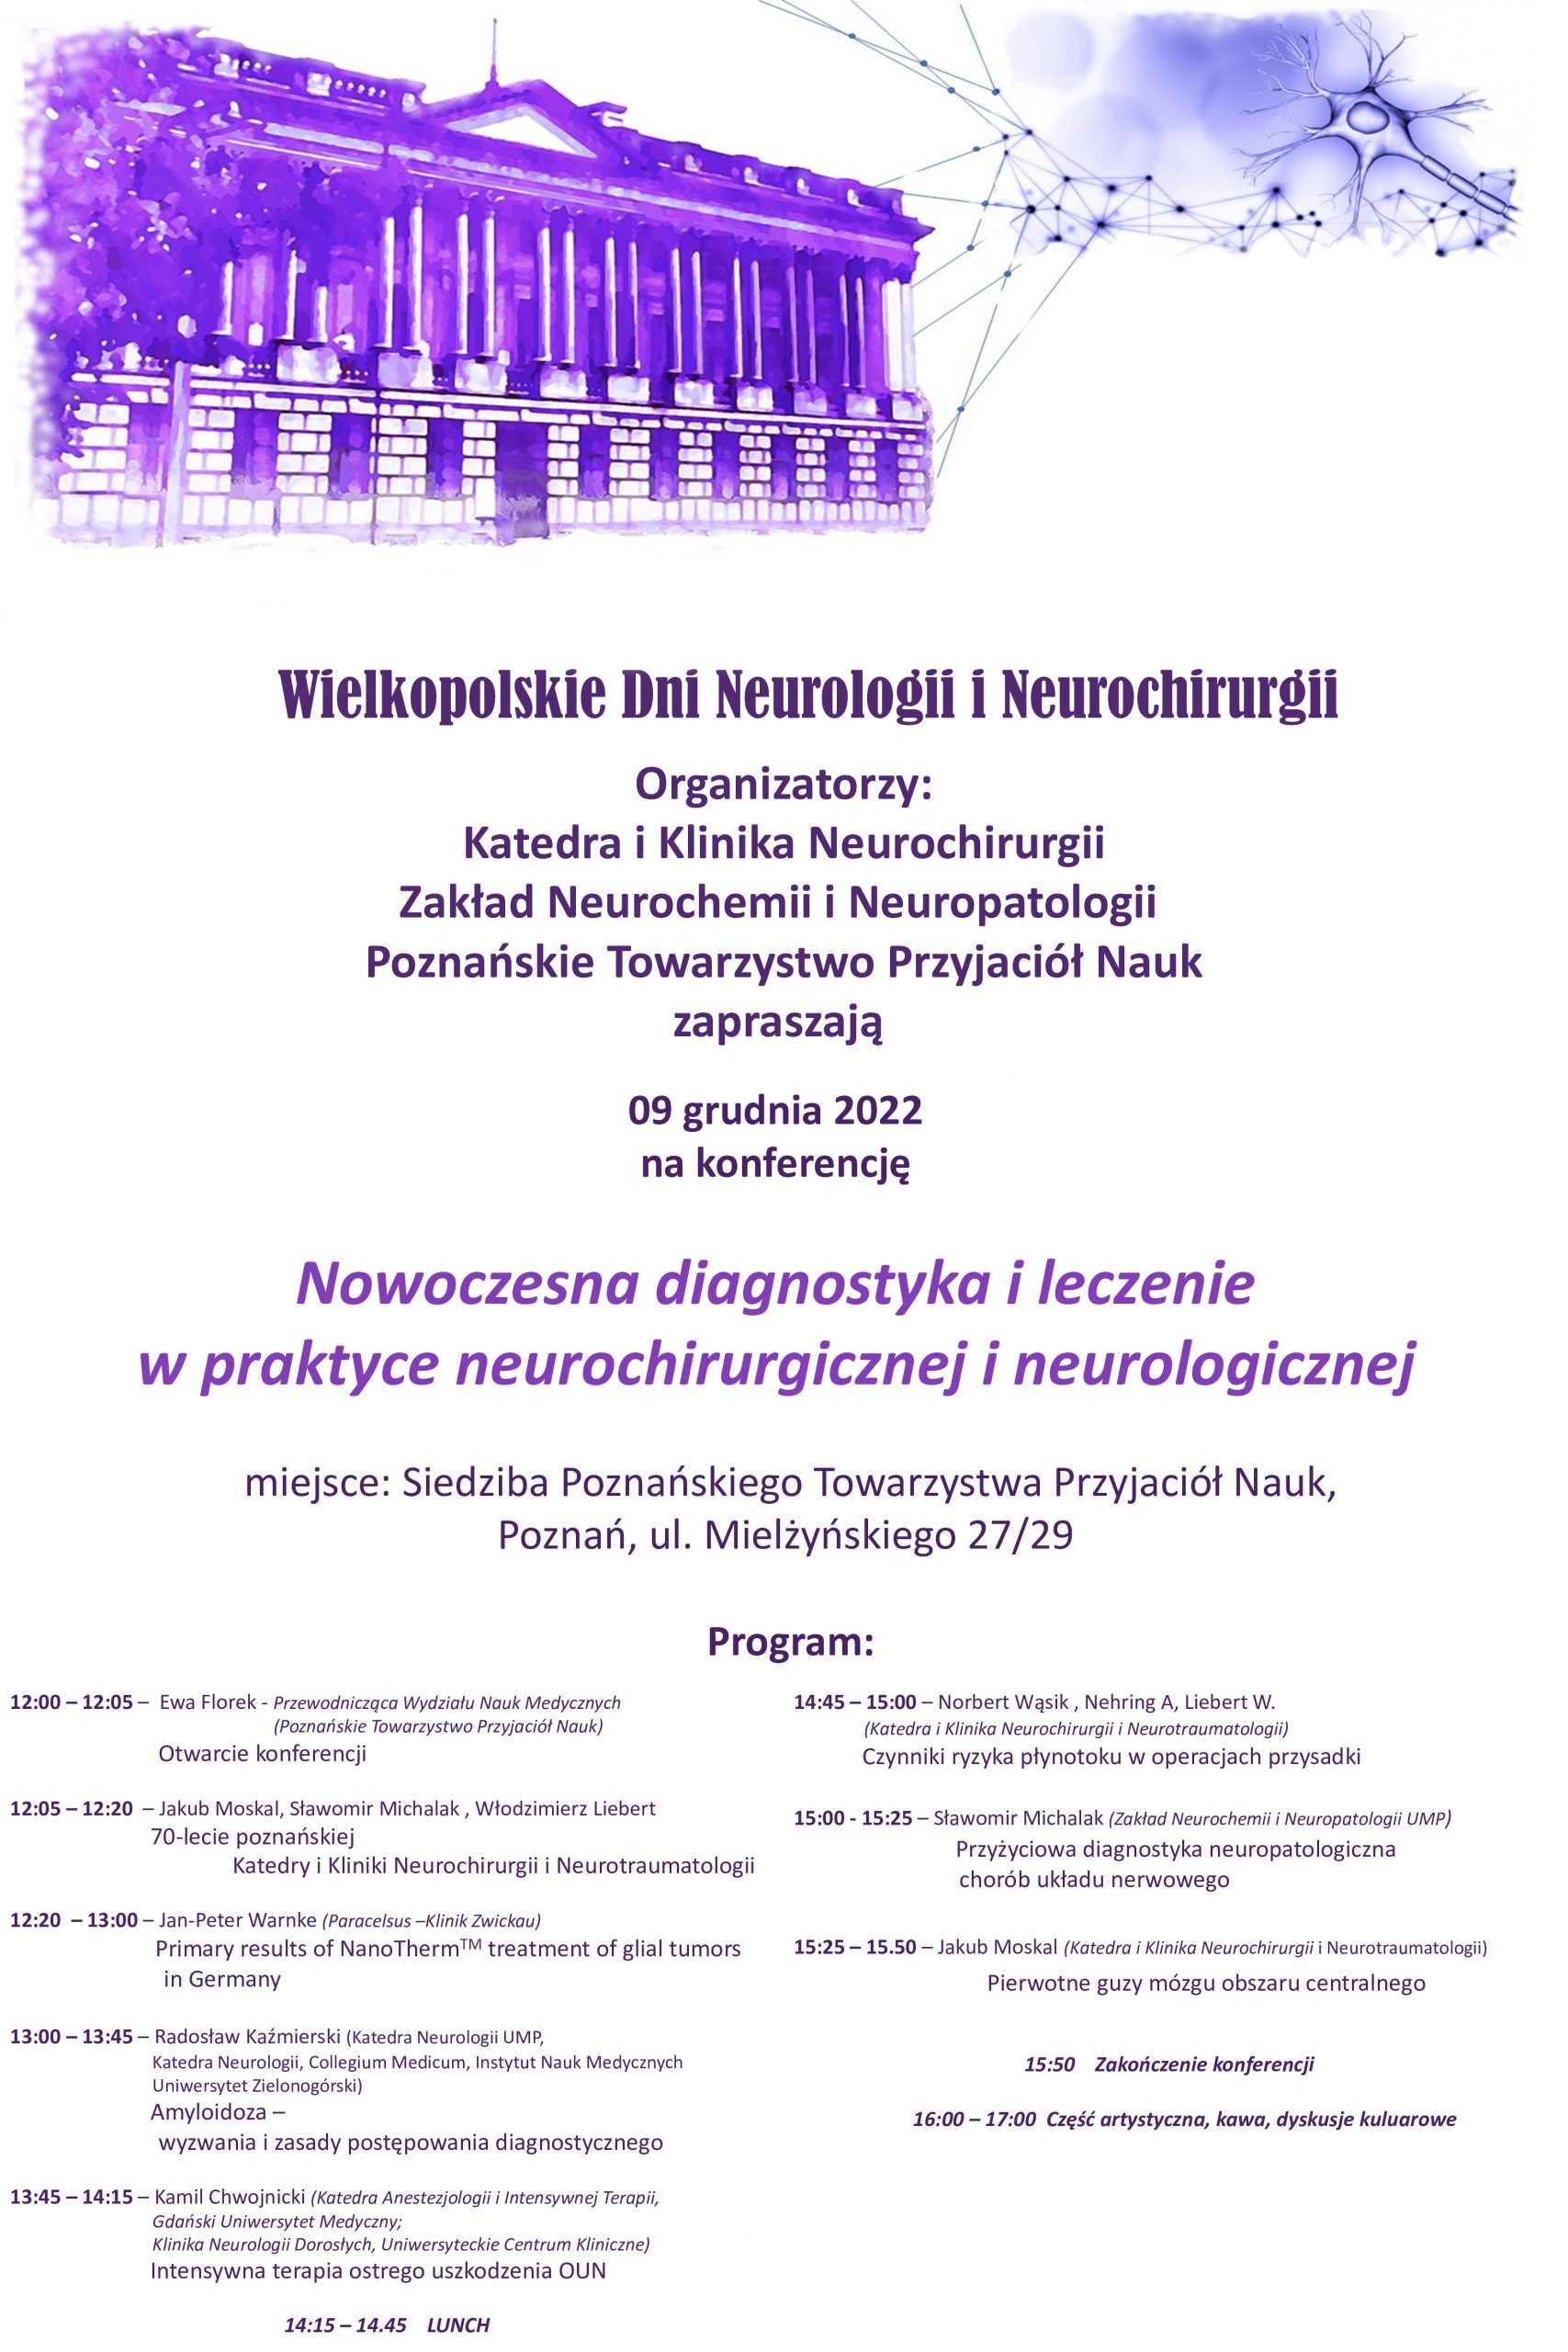 “Nowoczesna diagnostyka i leczenie w praktyce neurochirurgicznej i neurologicznej” –      9 grudnia 2022 r.